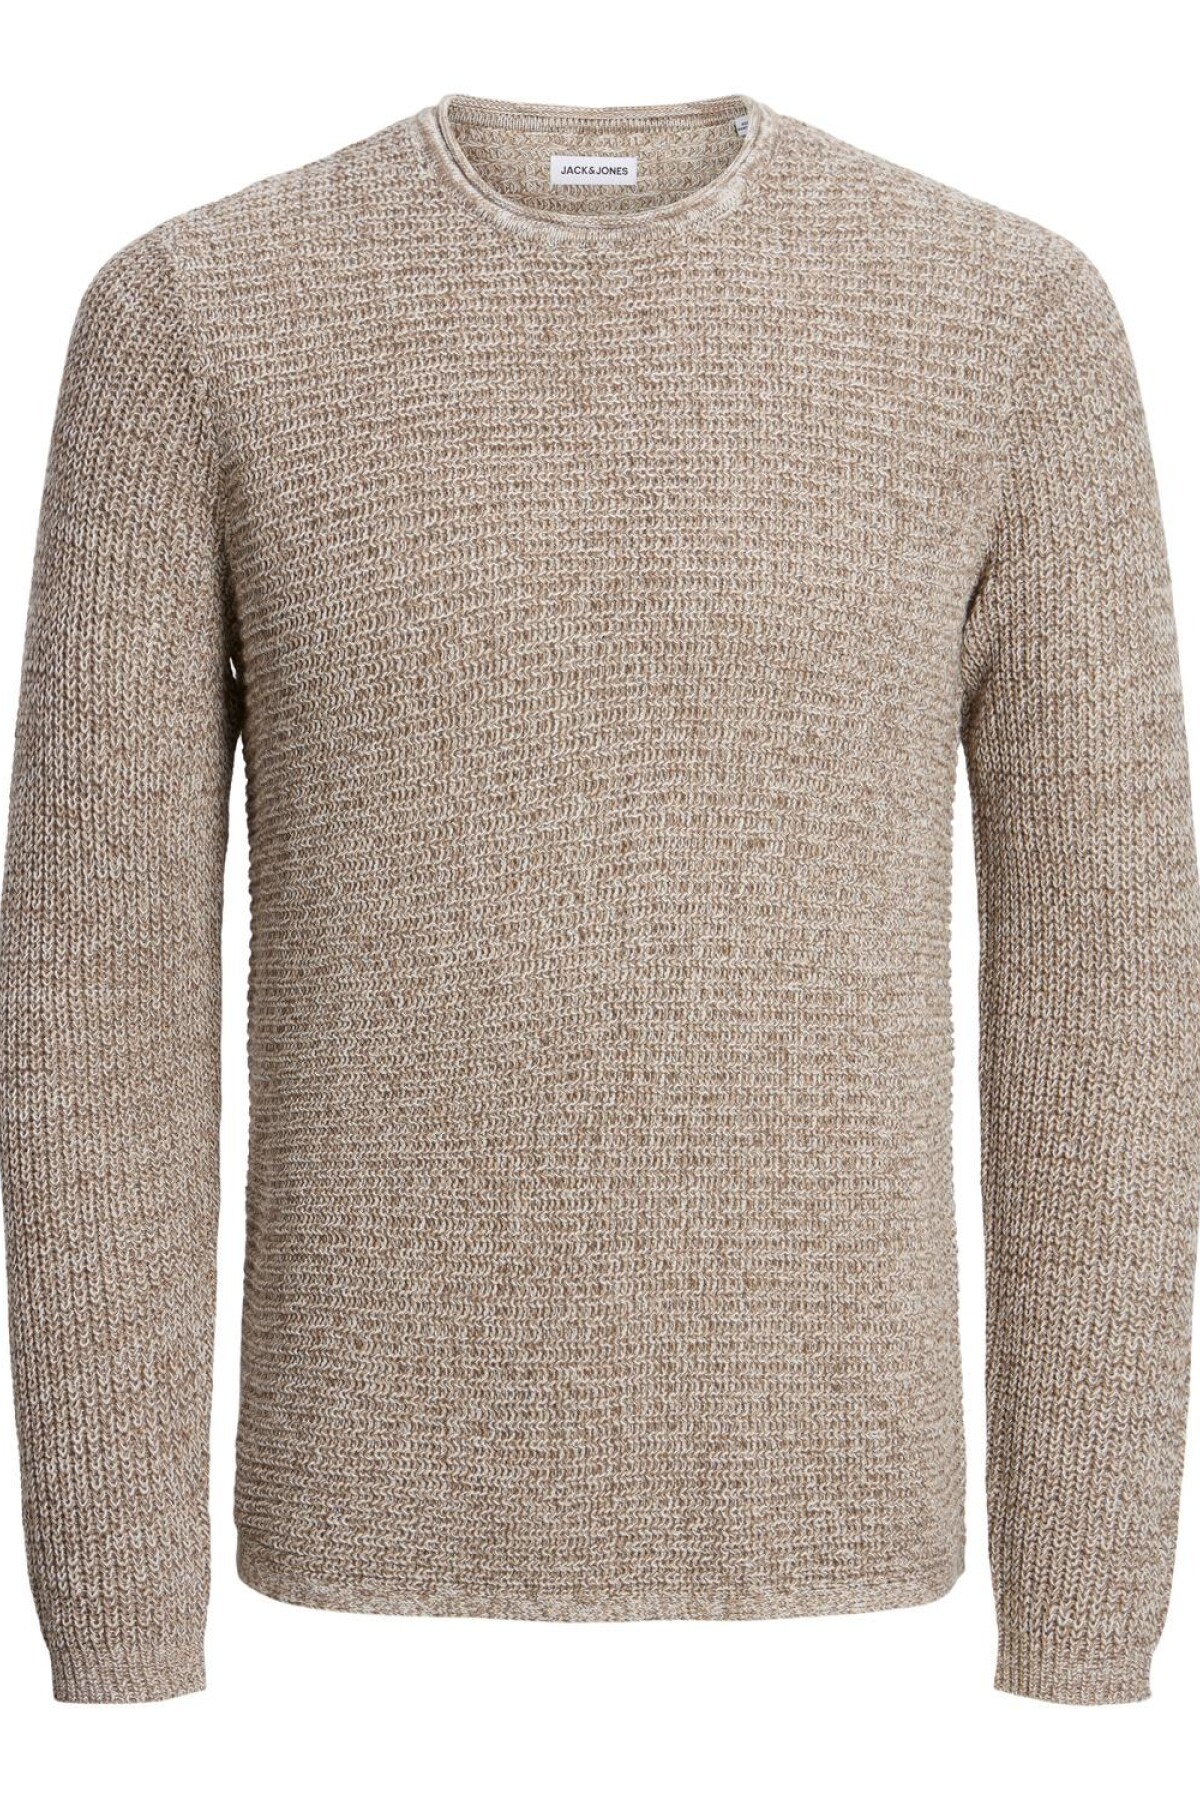 Sweater Phil Falcon